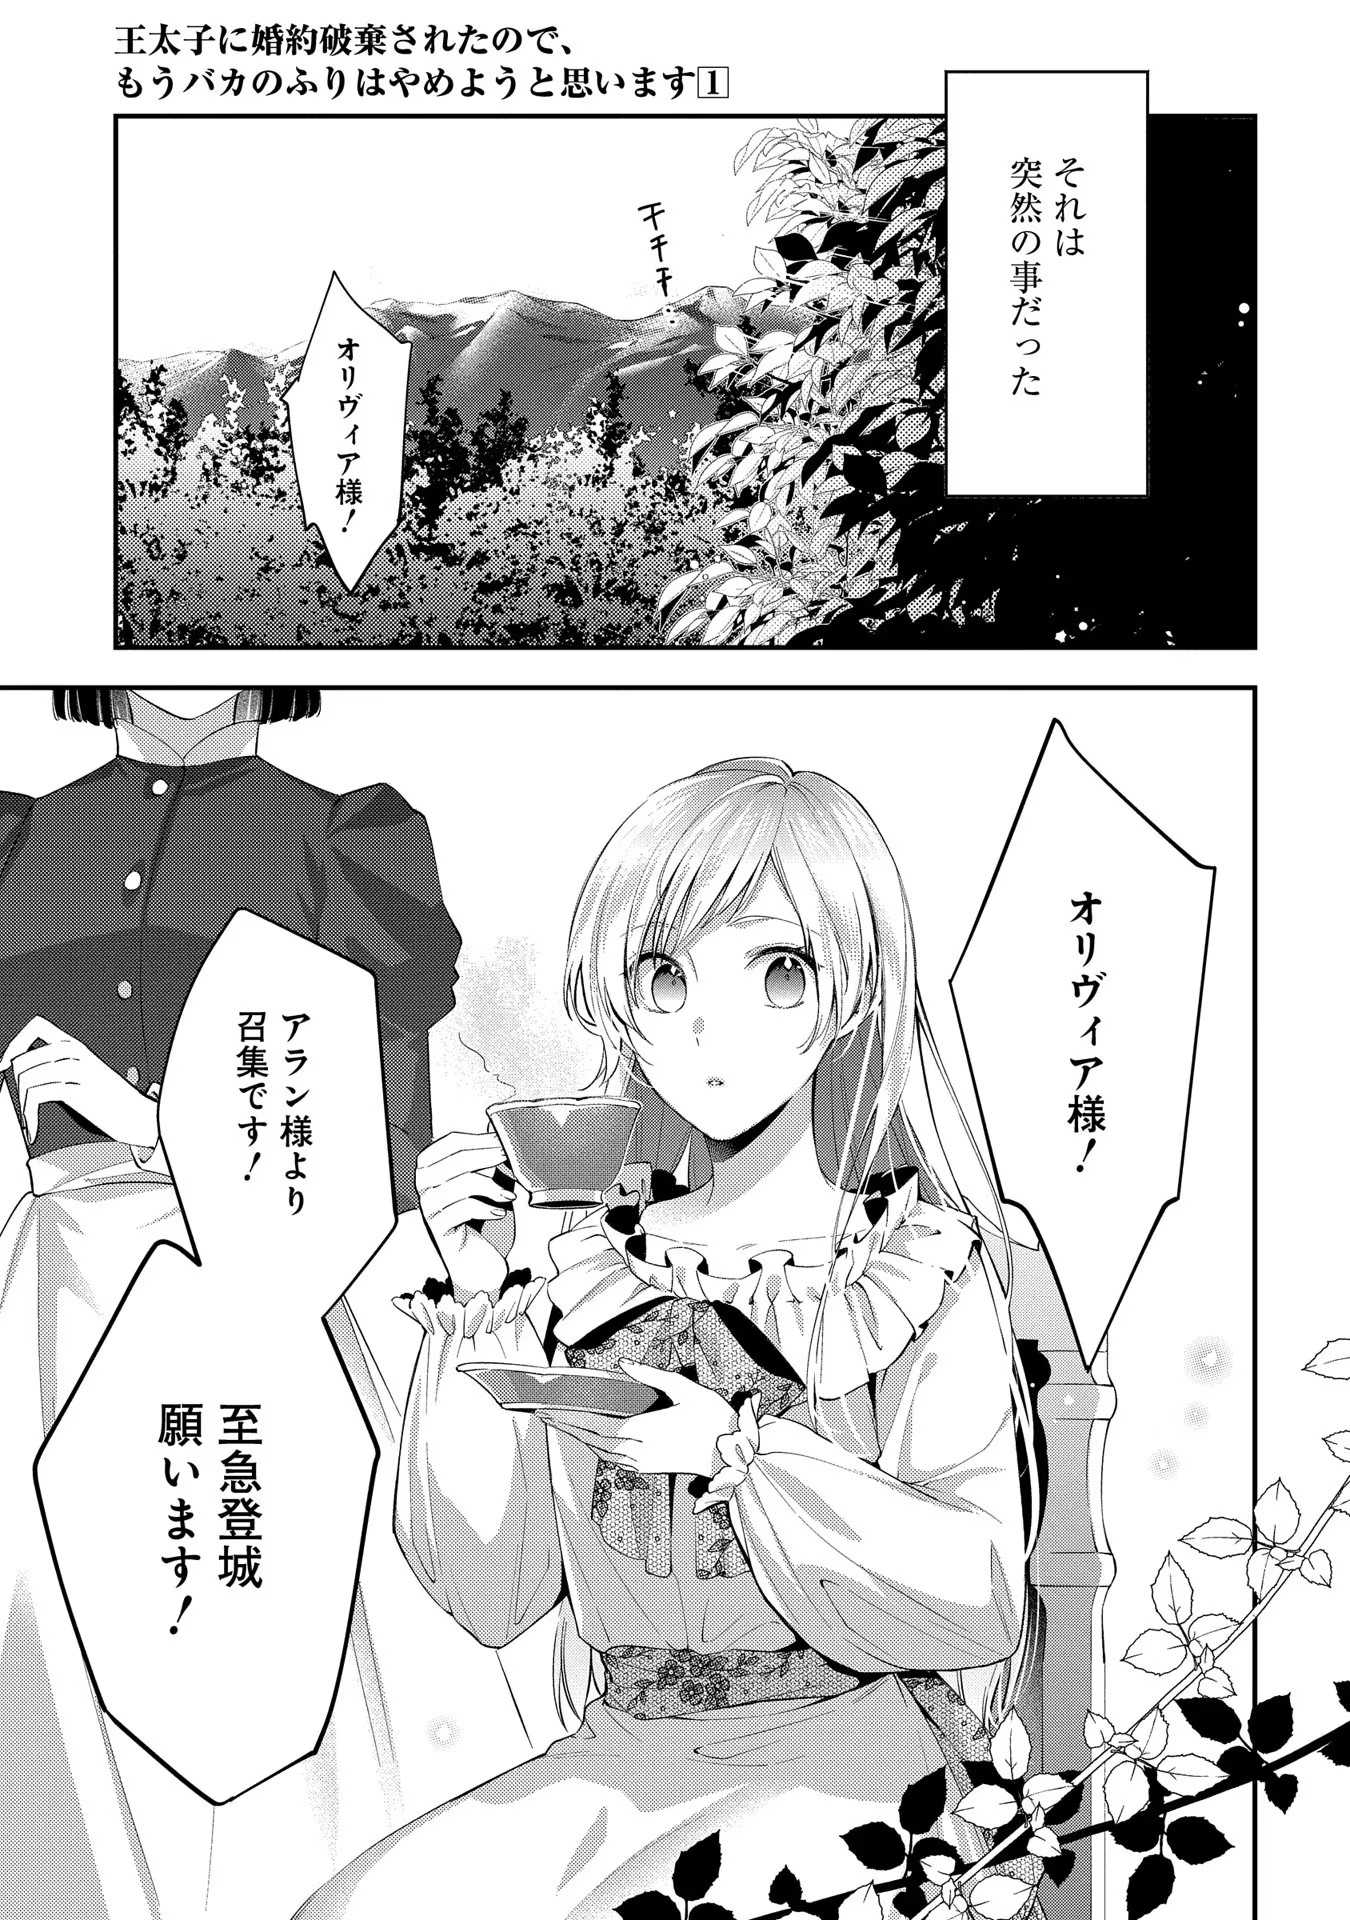 Outaishi ni Konyaku Hakisareta no de, Mou Baka no Furi wa Yameyou to Omoimasu - Chapter 1 - Page 5